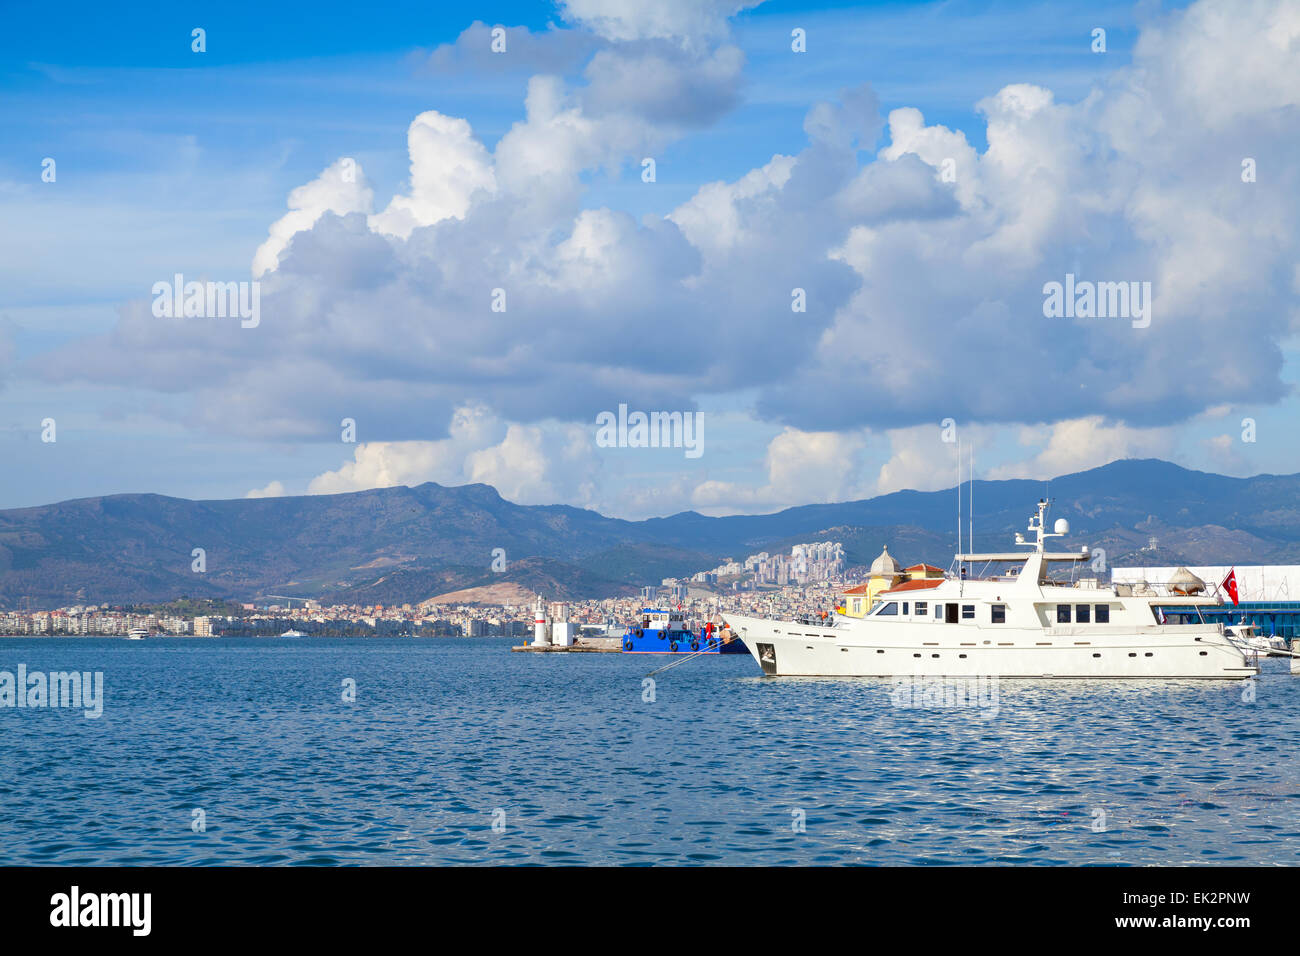 Paisaje costero con barcos amarrados. La ciudad de Izmir, Turquía Foto de stock